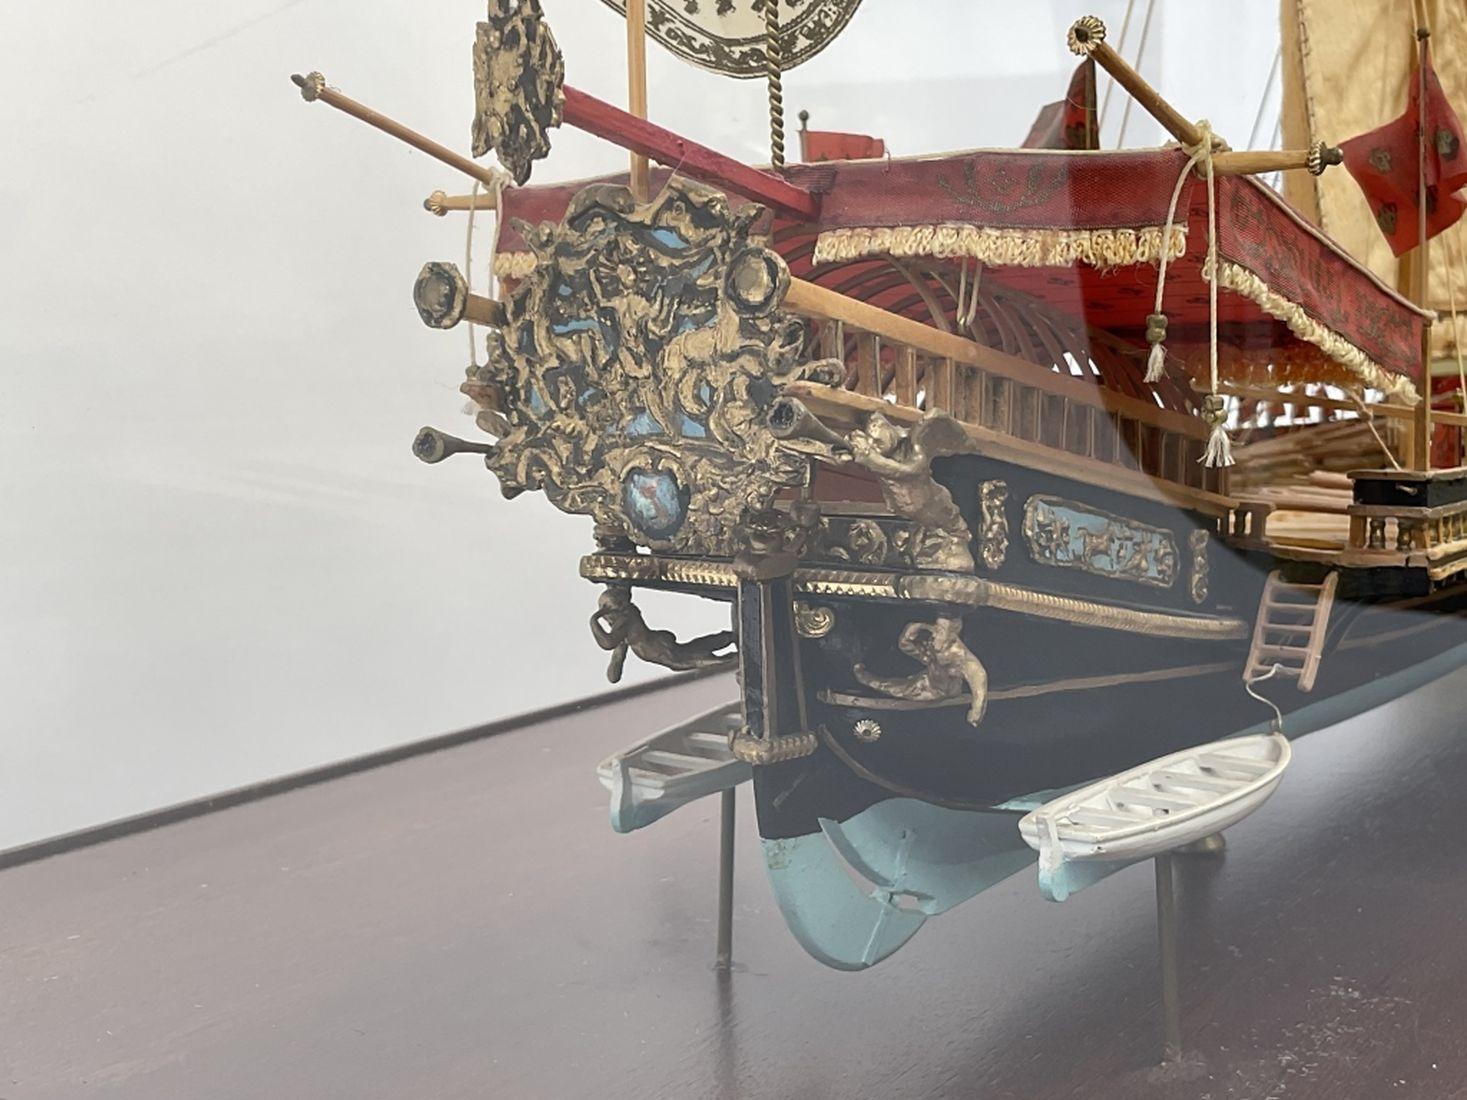 Ship Model In Case "La Réale" - Lannan Gallery